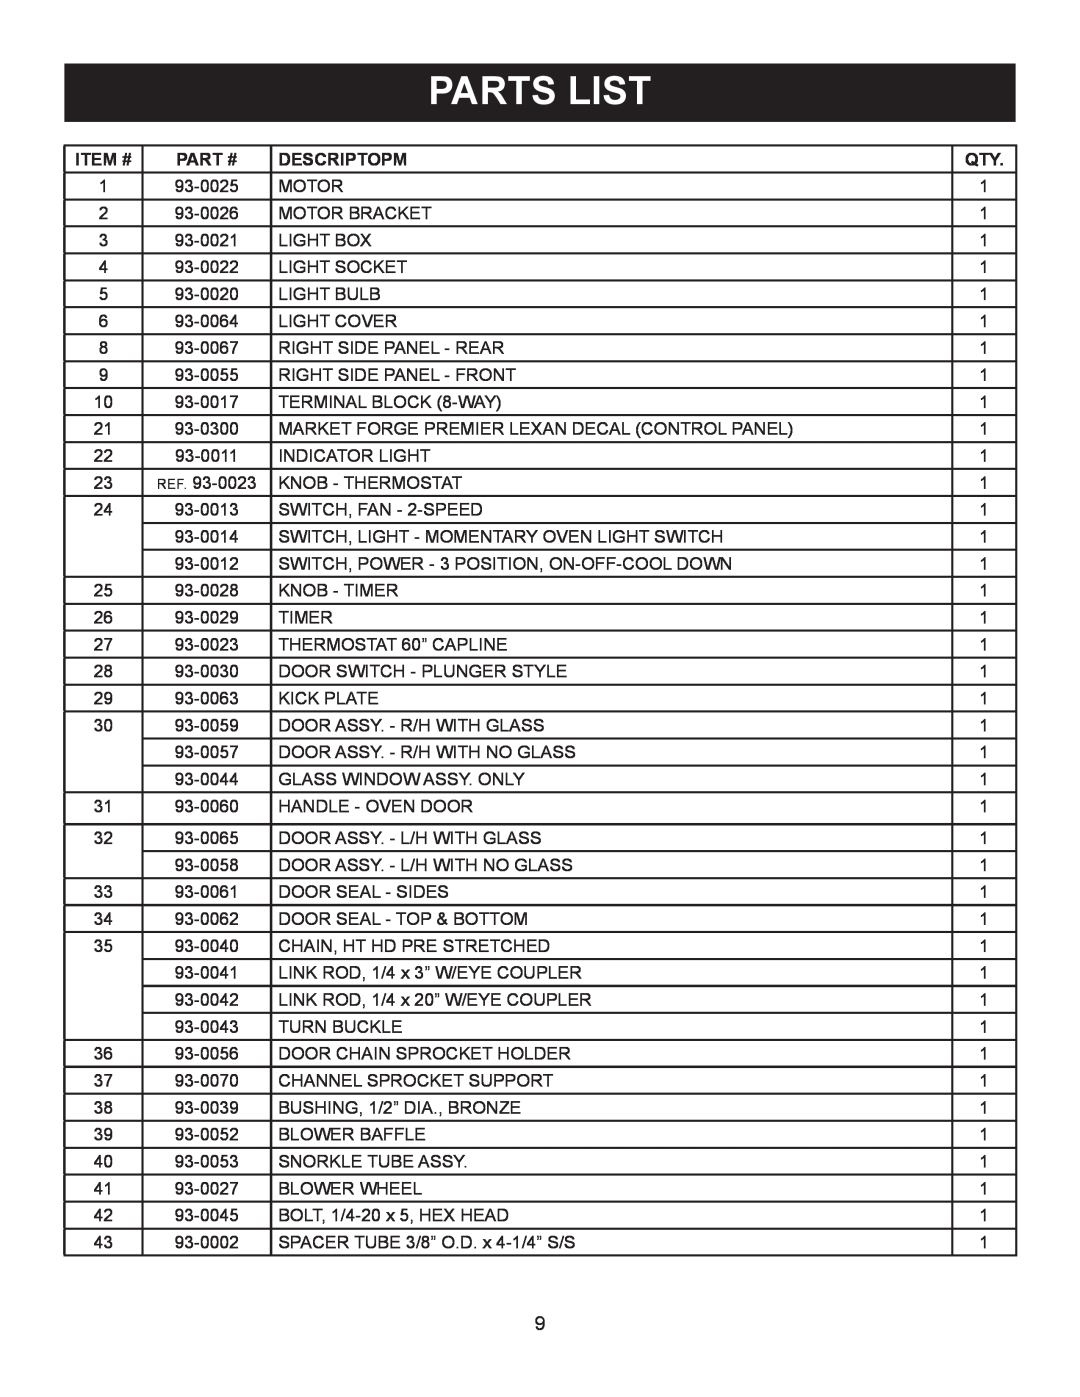 Market Forge Industries M 3092, M 3000 owner manual Parts List, Item #, Part #, Descriptopm 